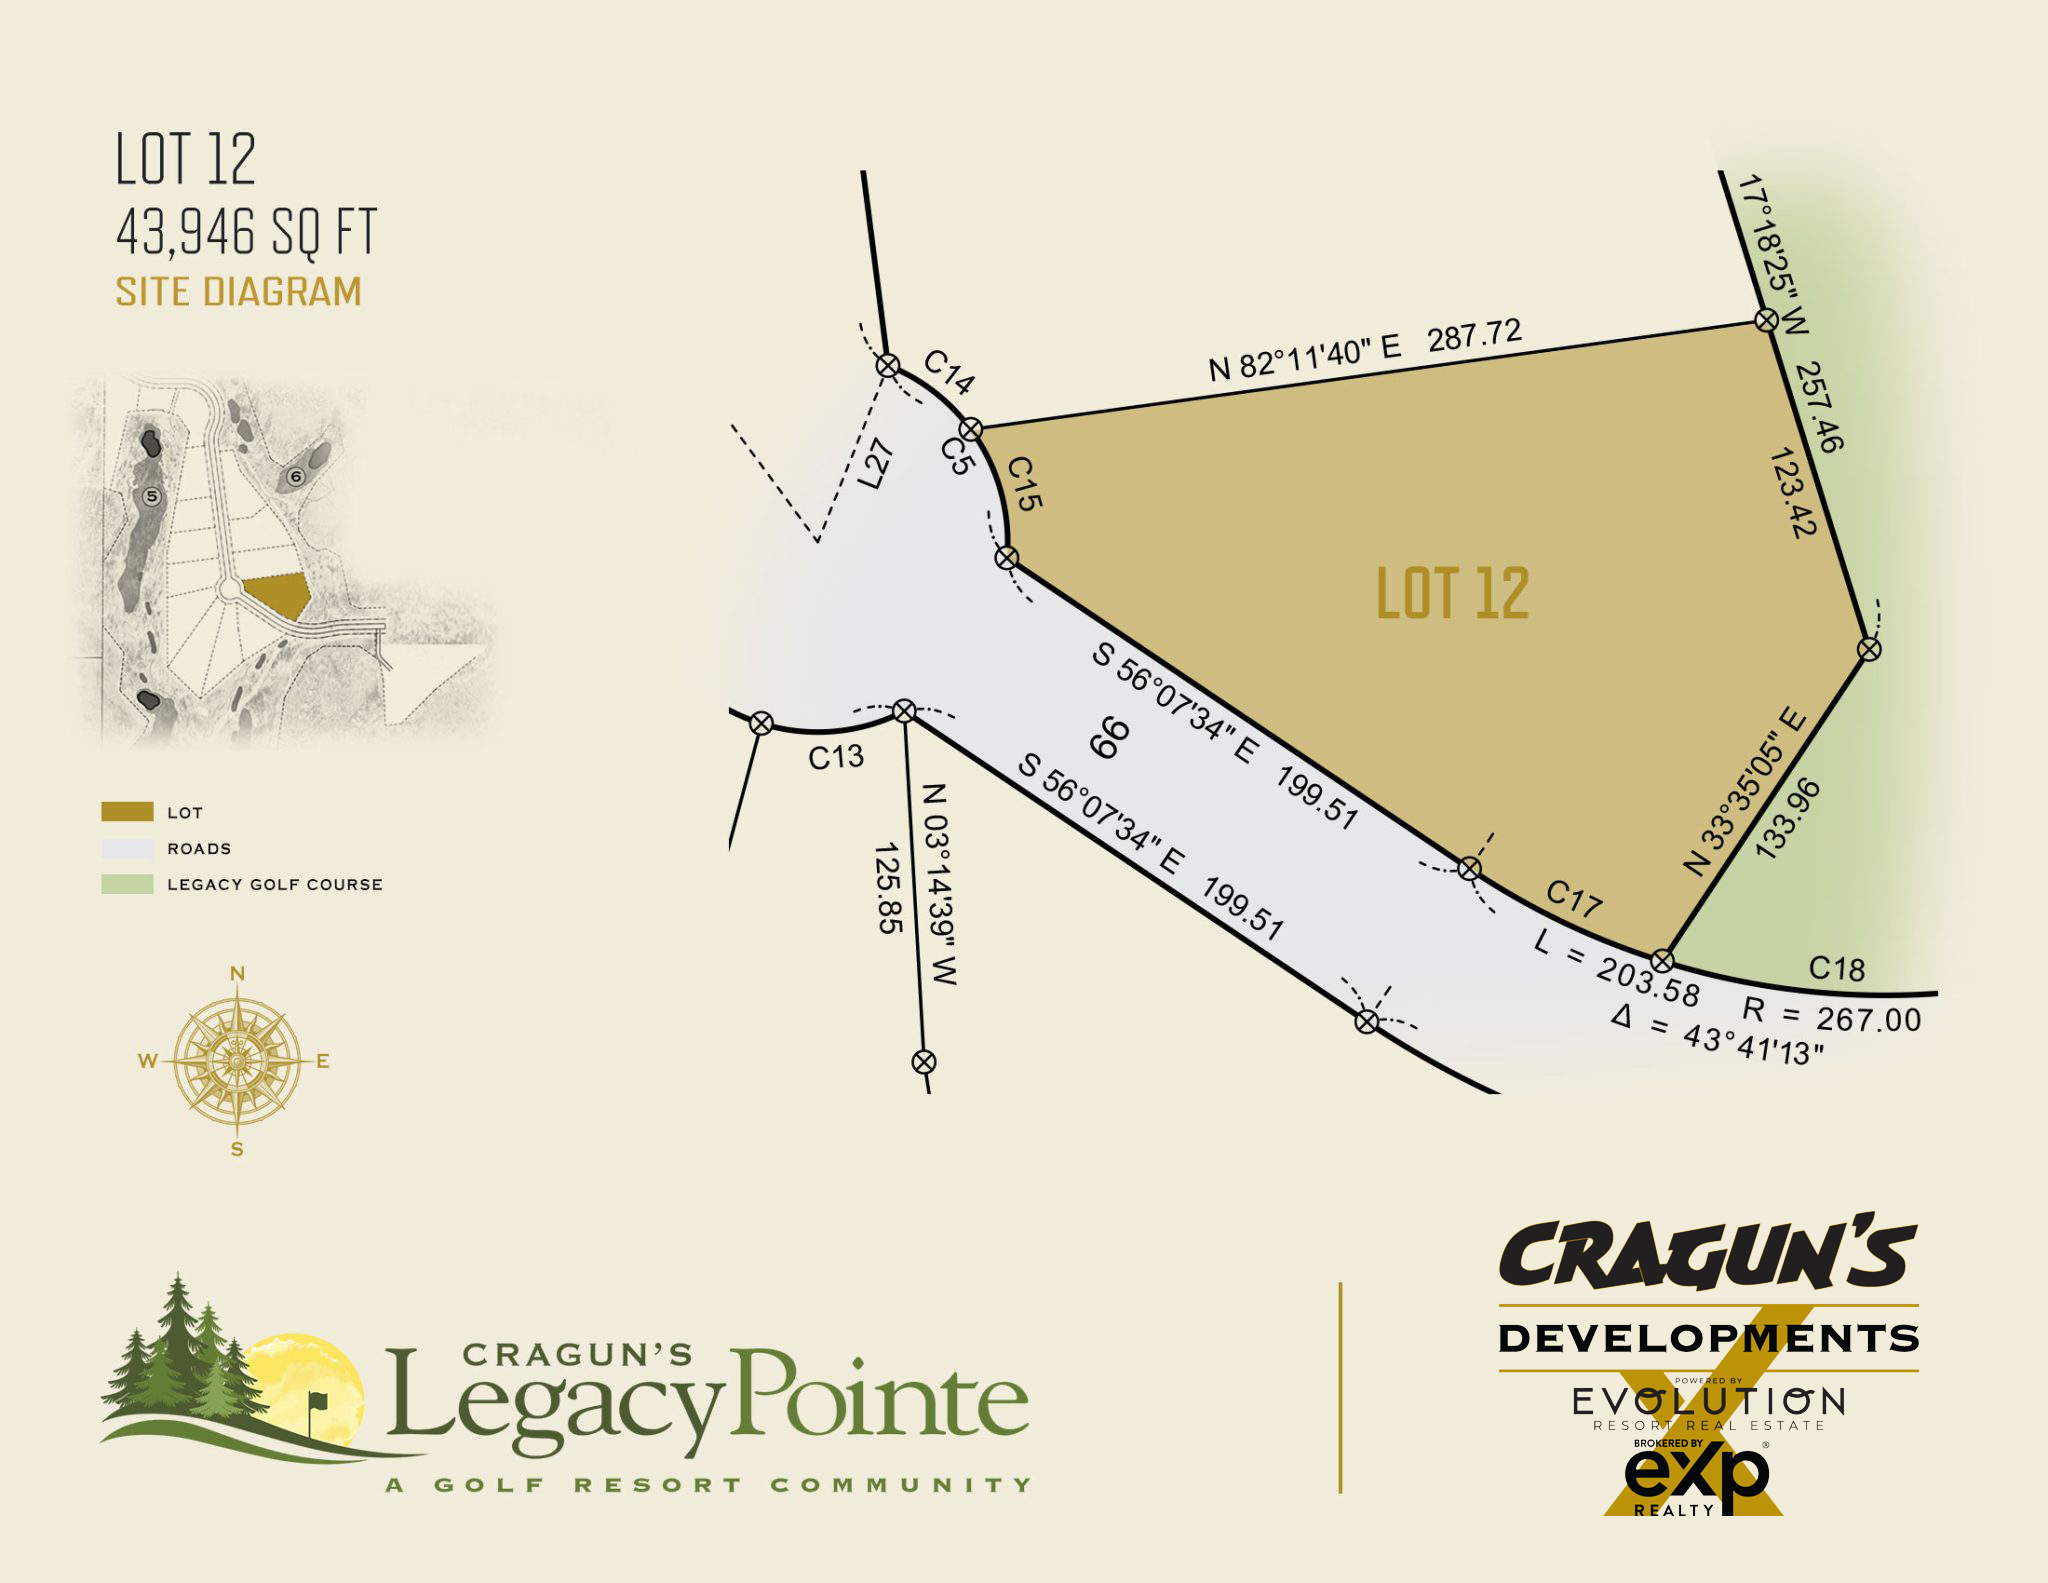 Legacy Pointe Lot 12 at Cragun's Developments in Brainerd, MN